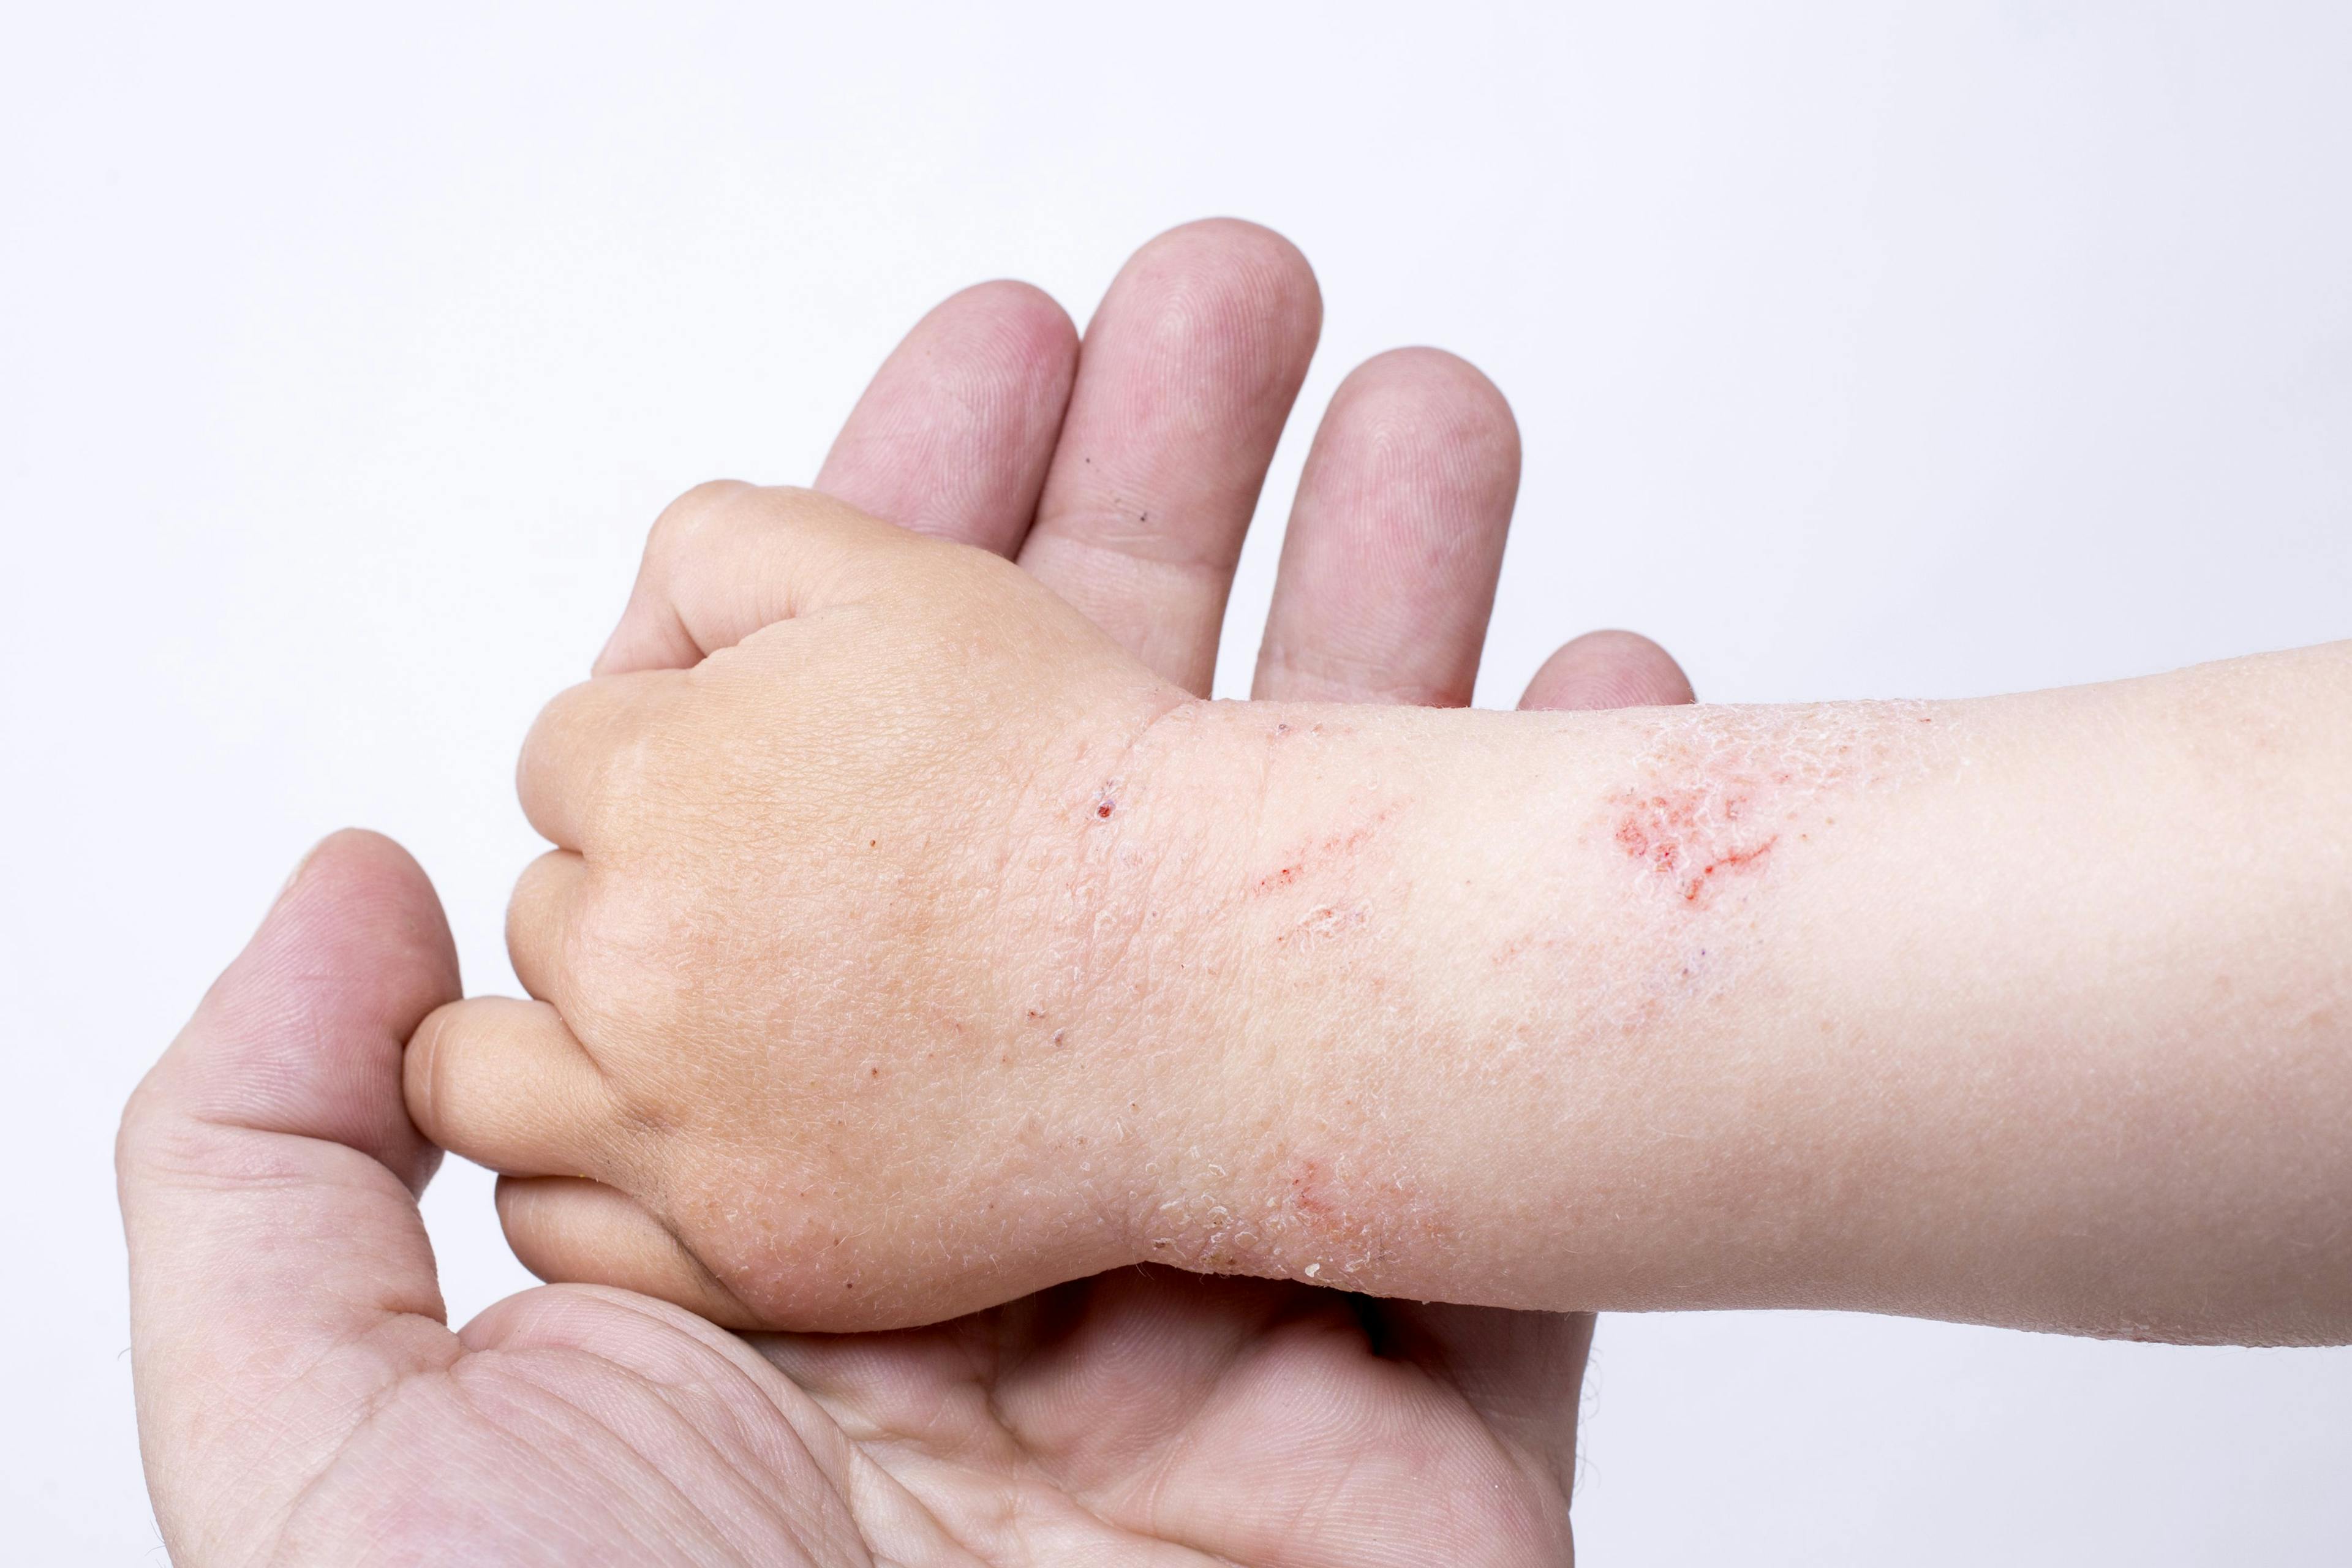 Gaps in pediatric atopic dermatitis treatment